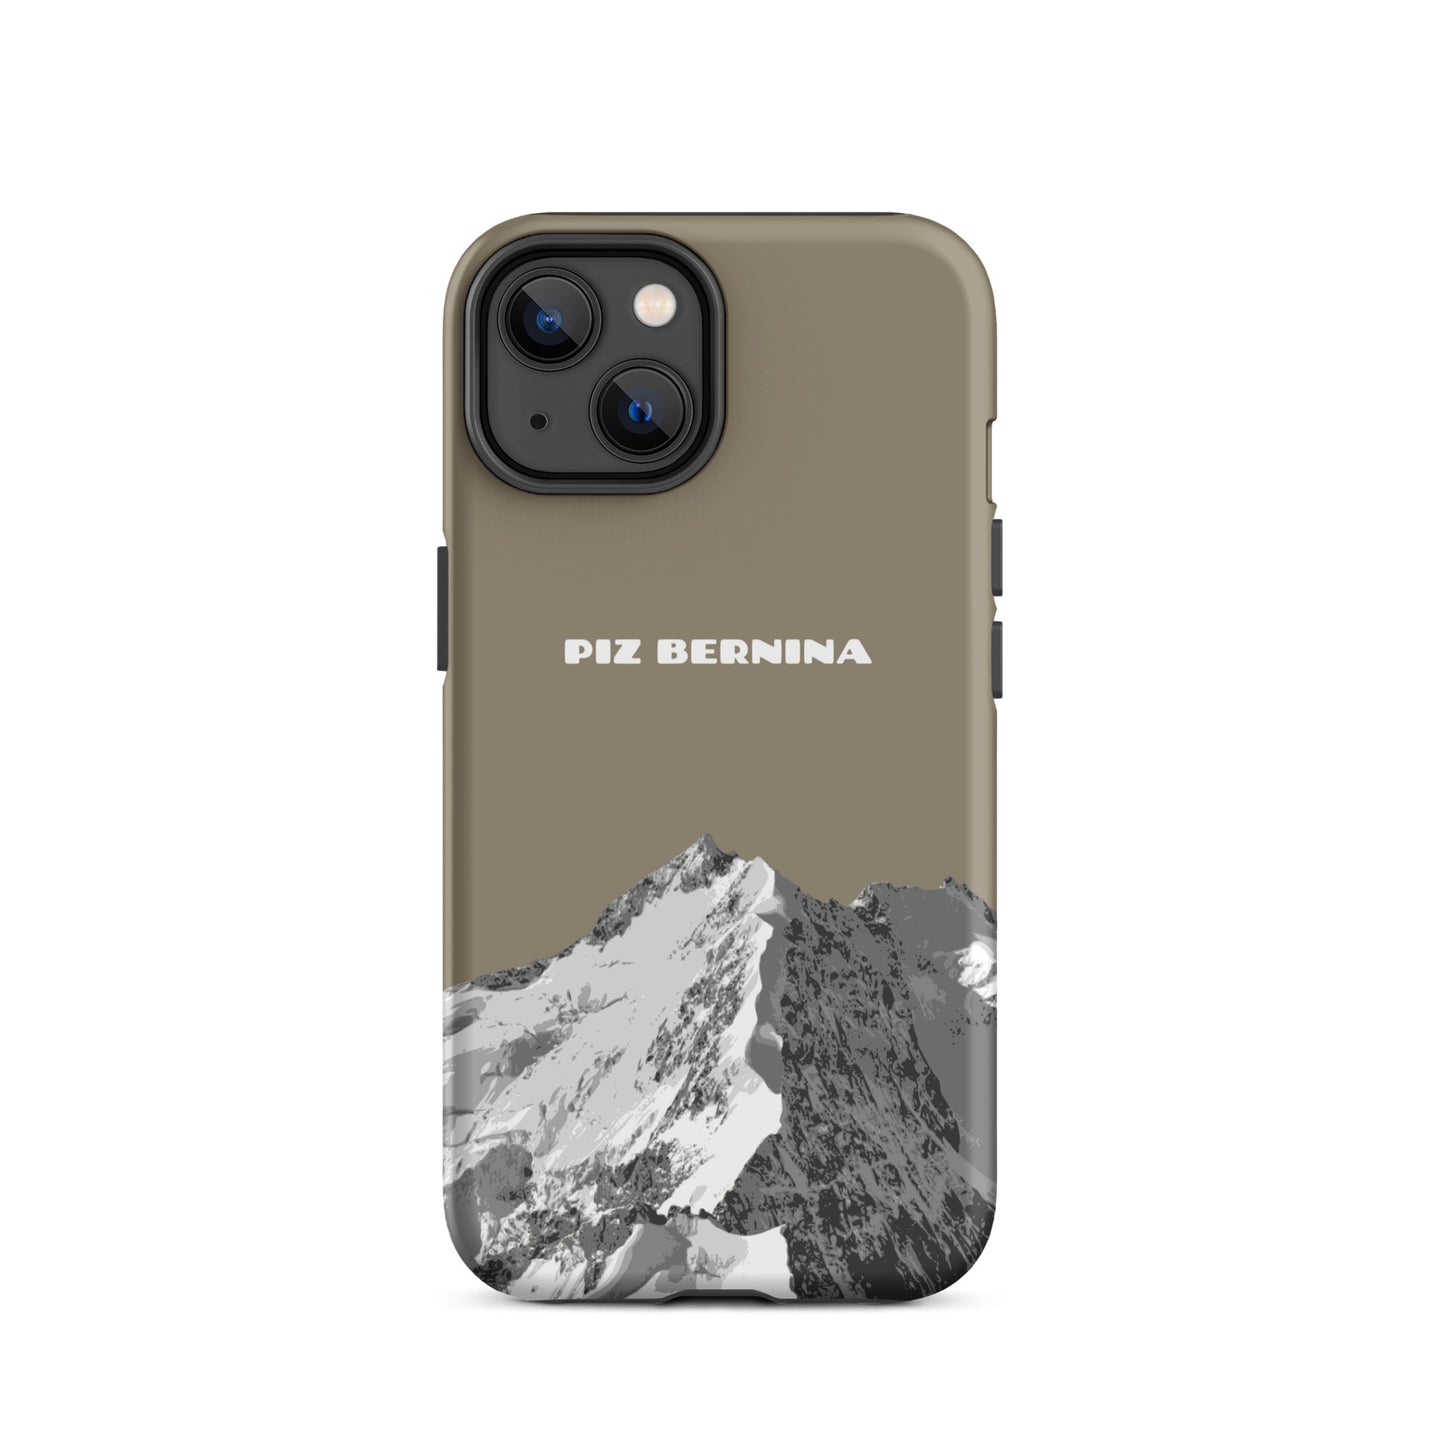 Hülle für das iPhone 14 von Apple in der Farbe Graubraun, dass den Piz Bernina in Graubünden zeigt.